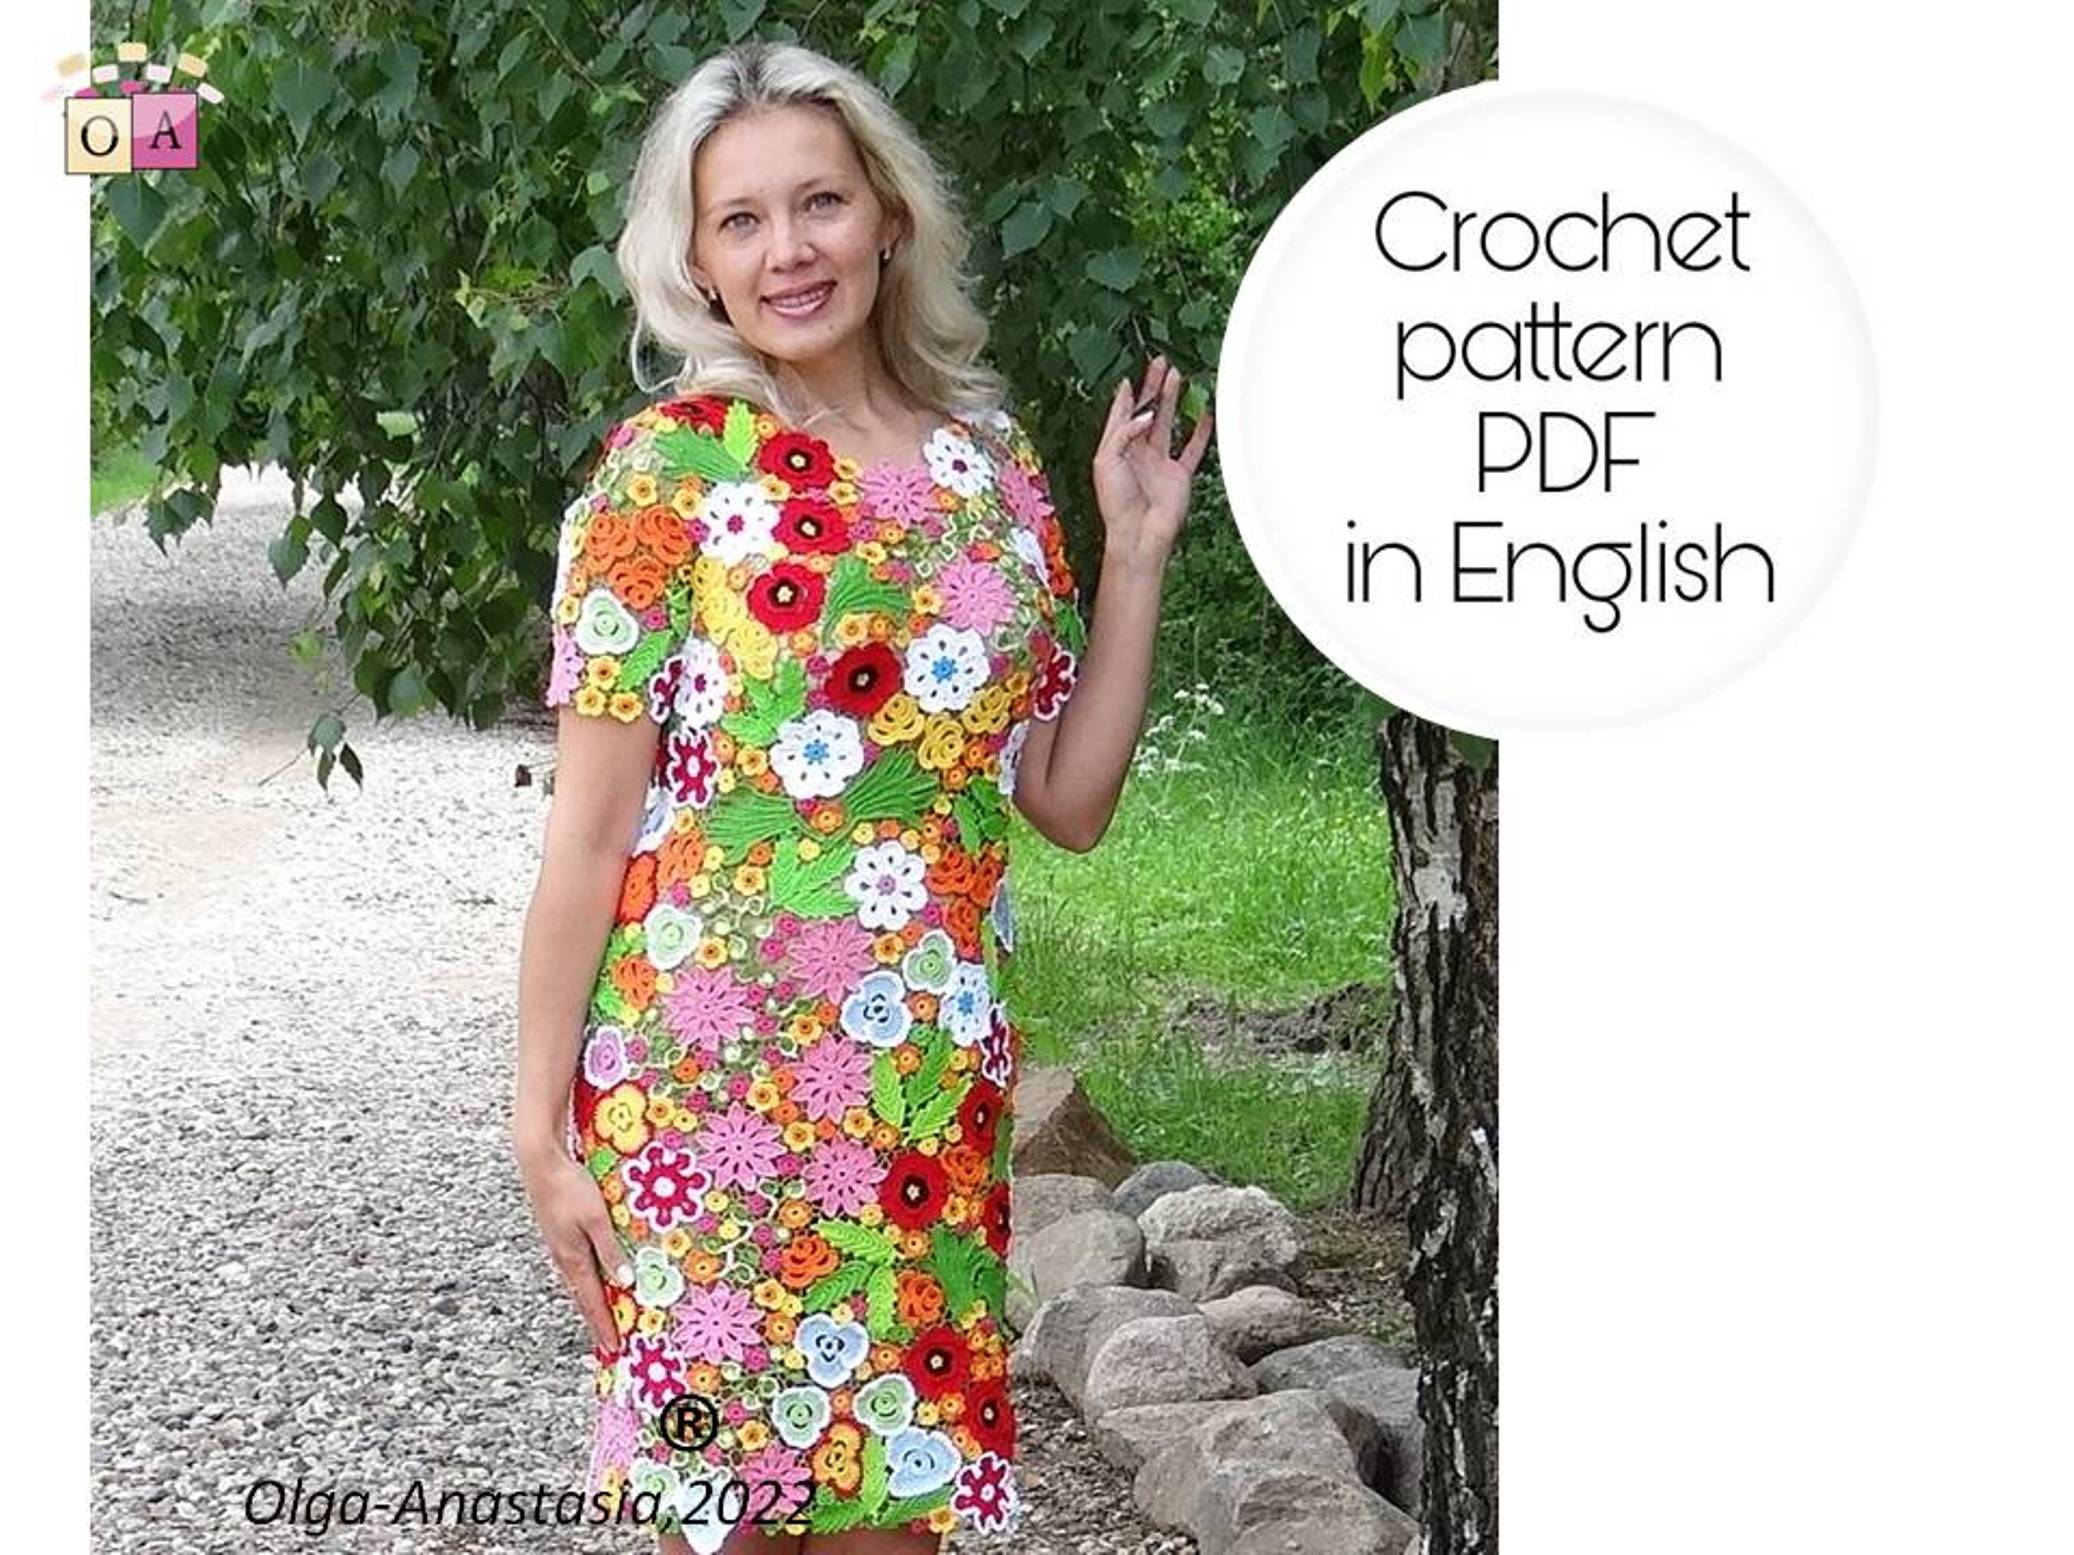 Dress crochet pattern- Irish lace crochet pattern